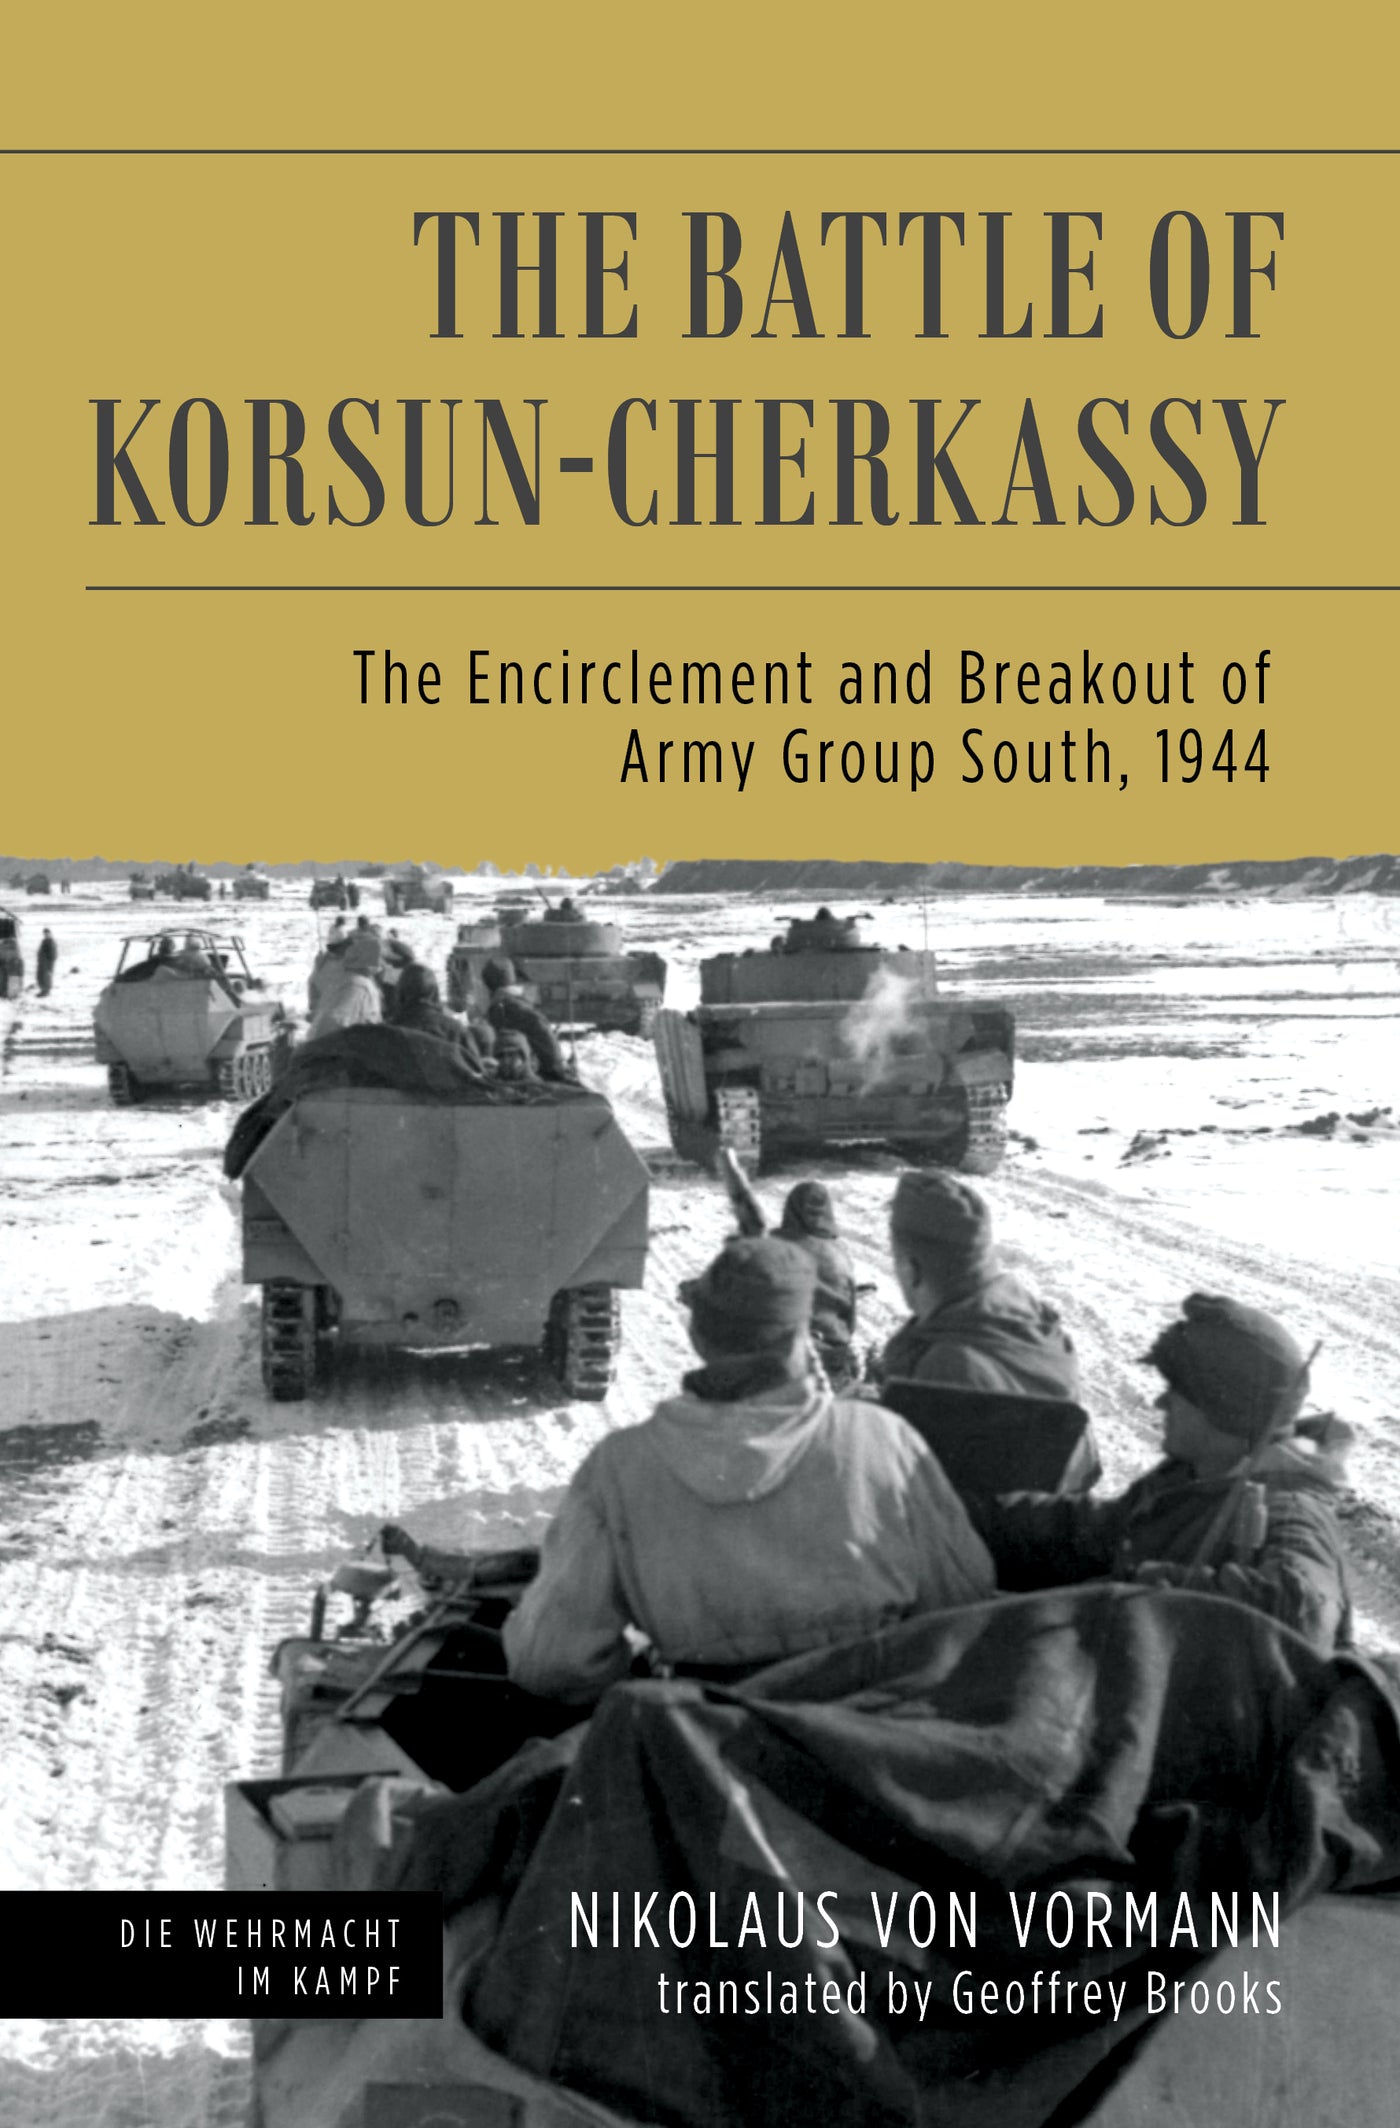 Die Schlacht von Korsun-Tscherkassy 